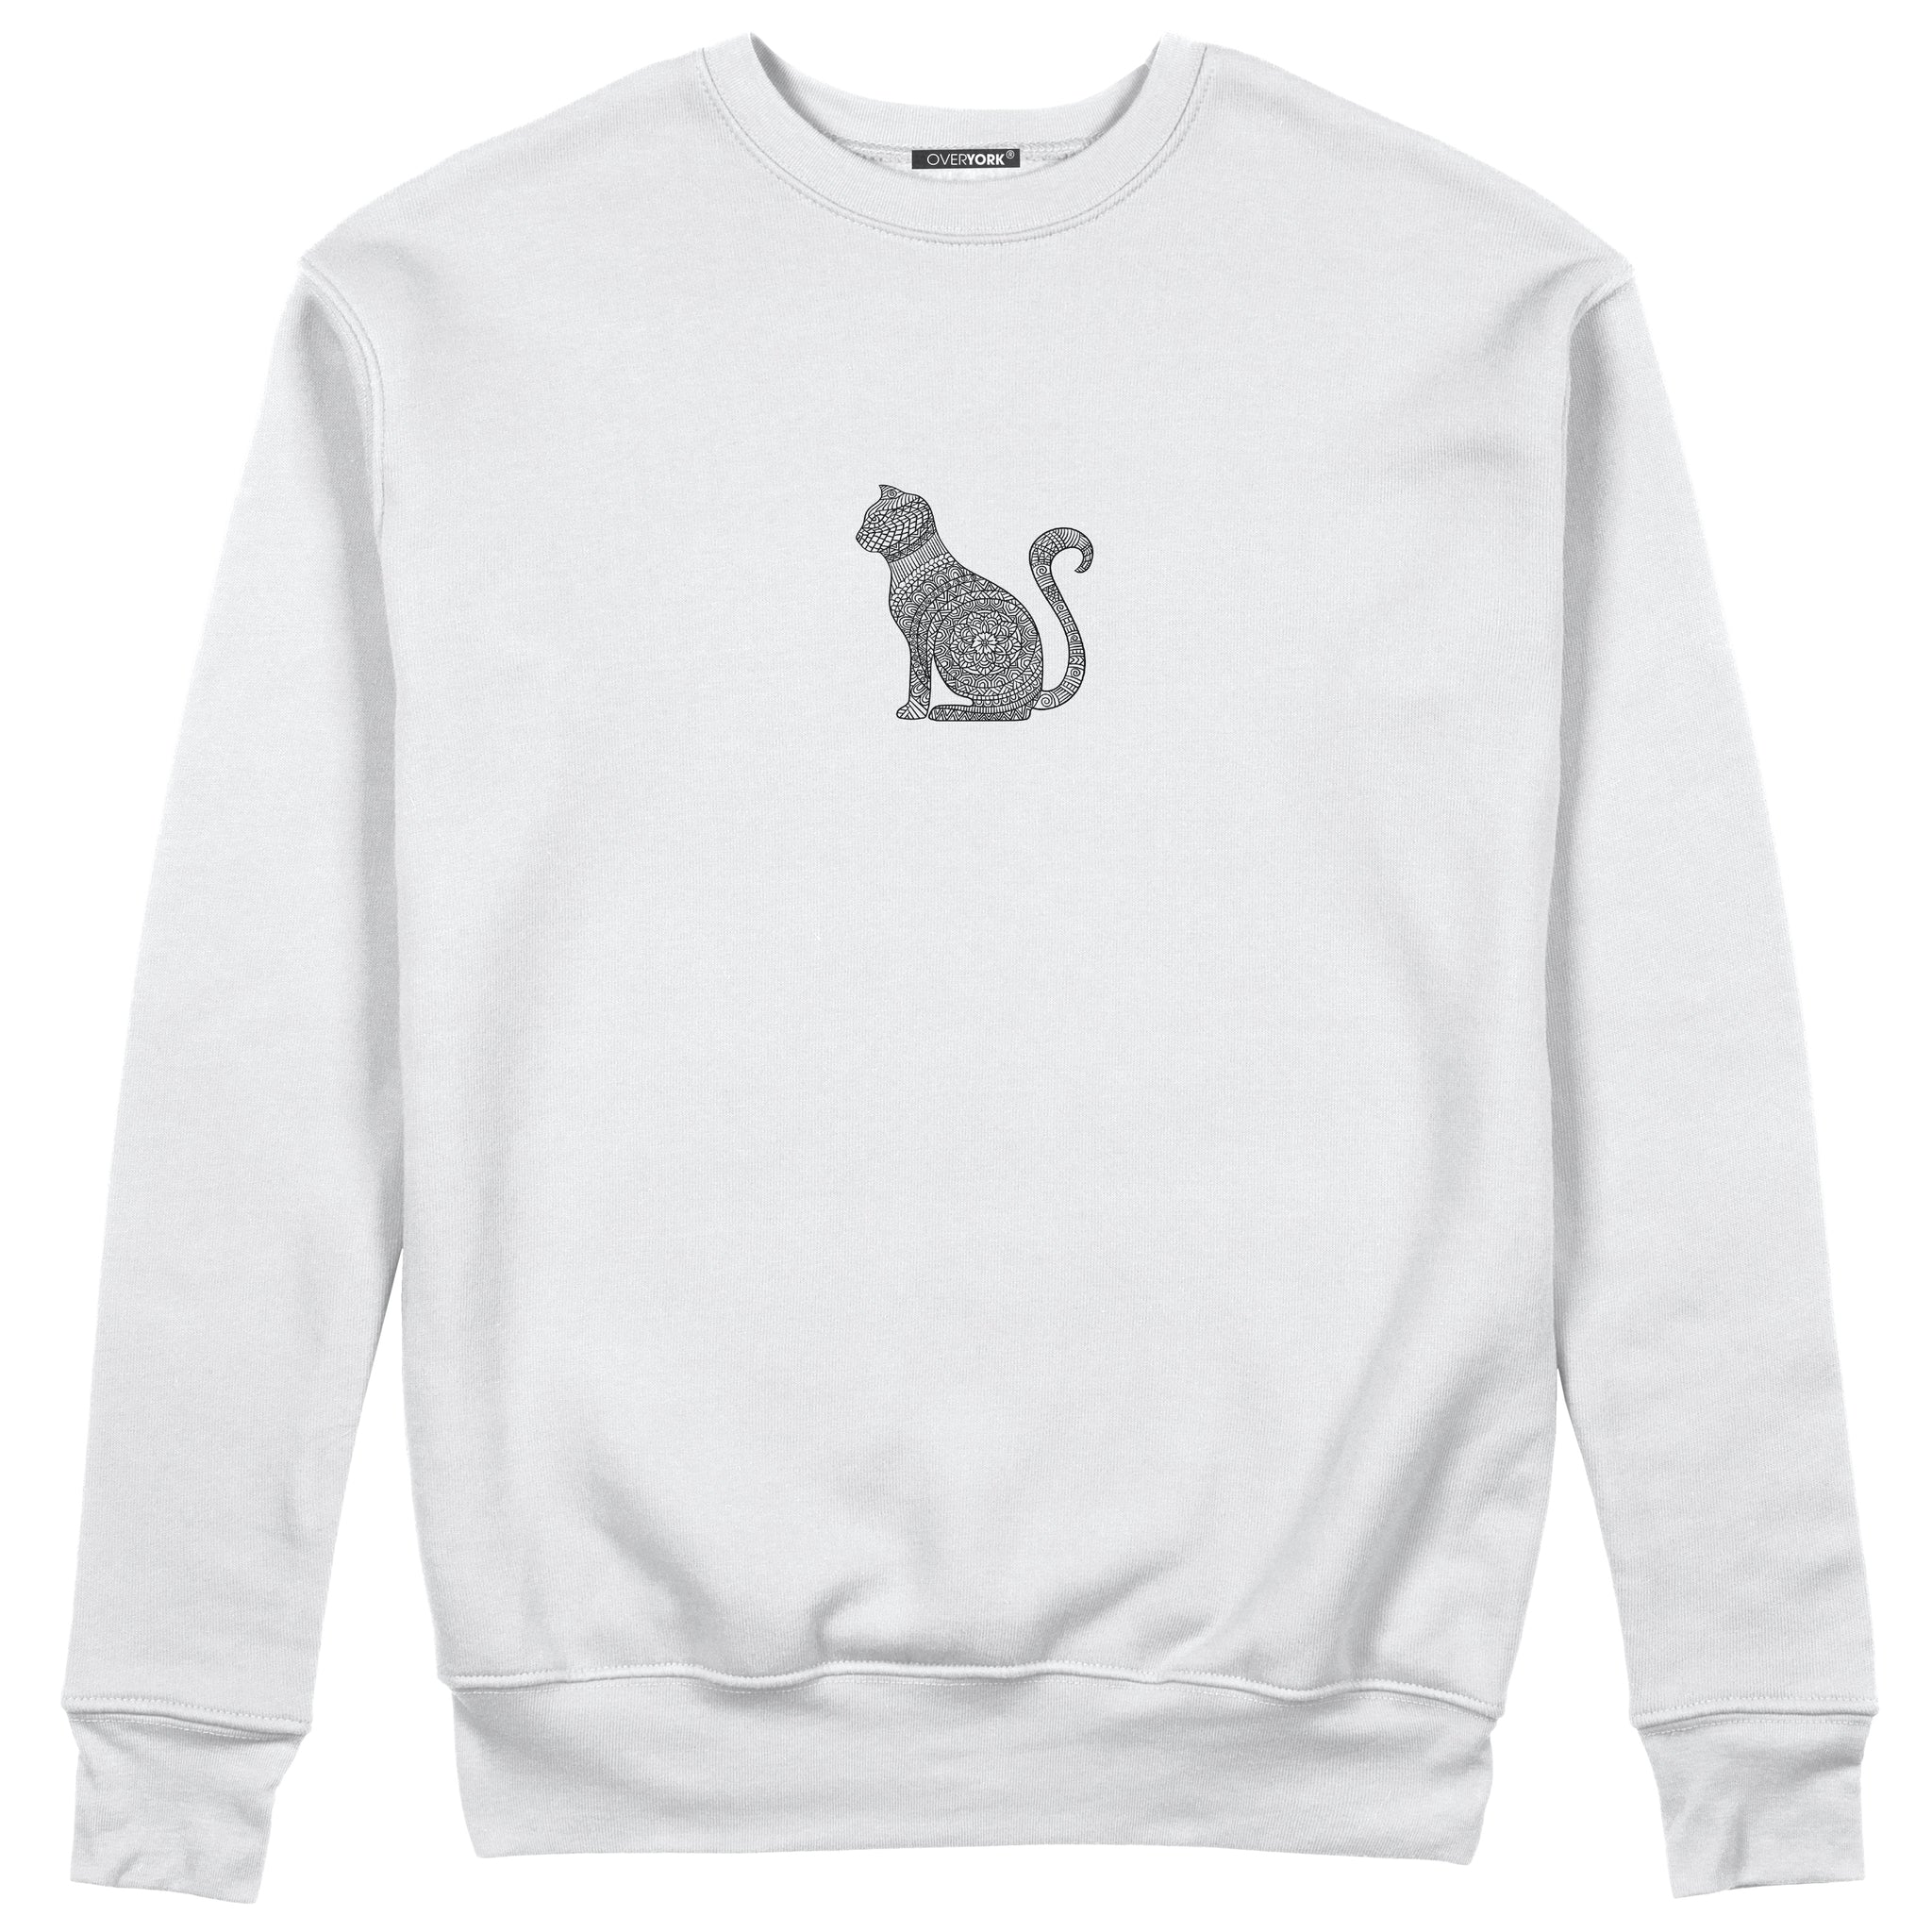 Cat II - Sweatshirt